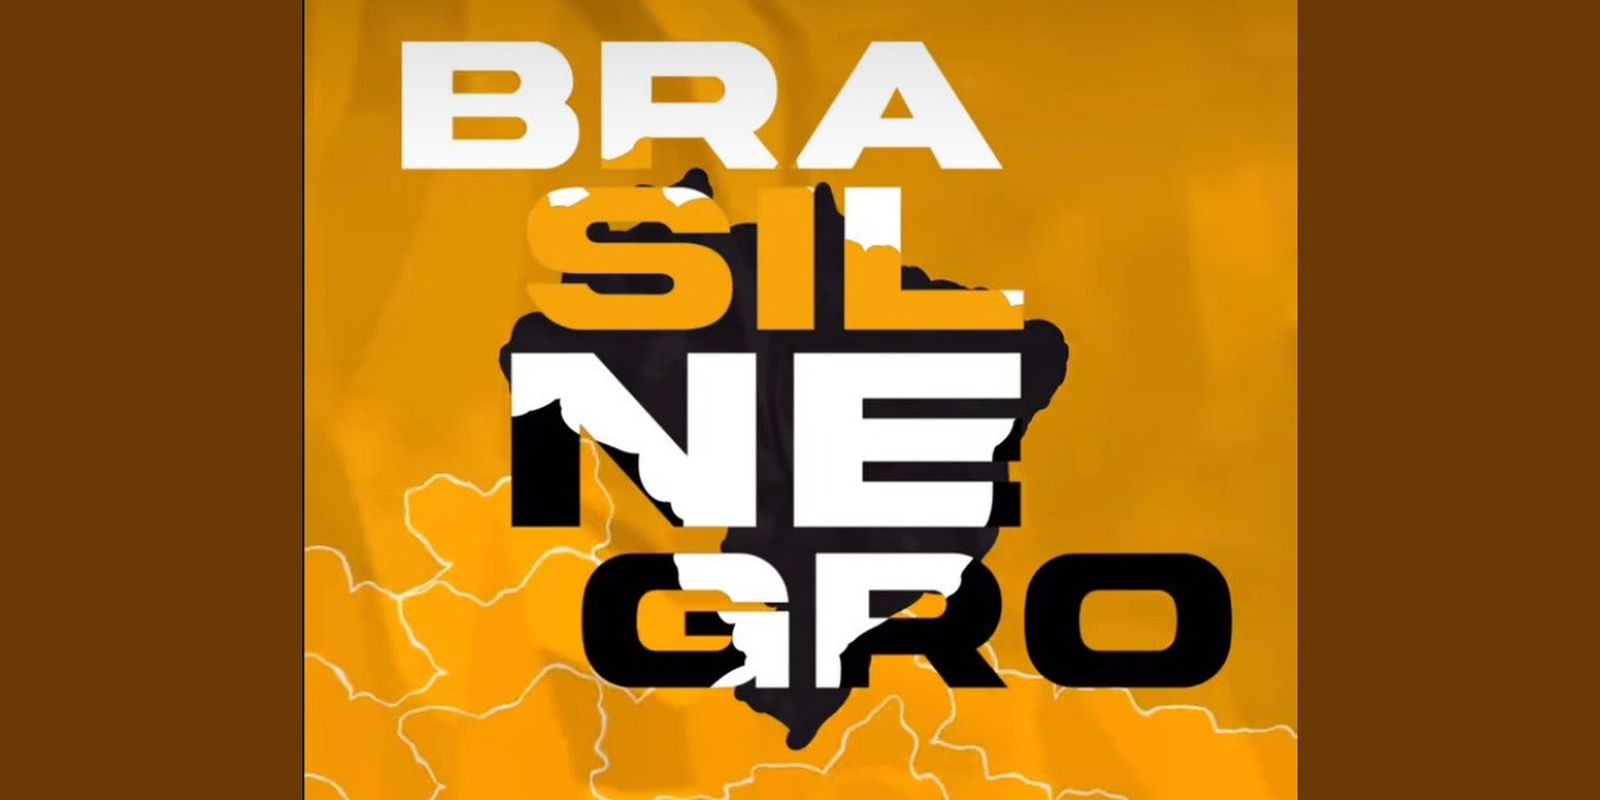 ebc-lanca-serie-“brasil-negro”-em-suas-redes-sociais